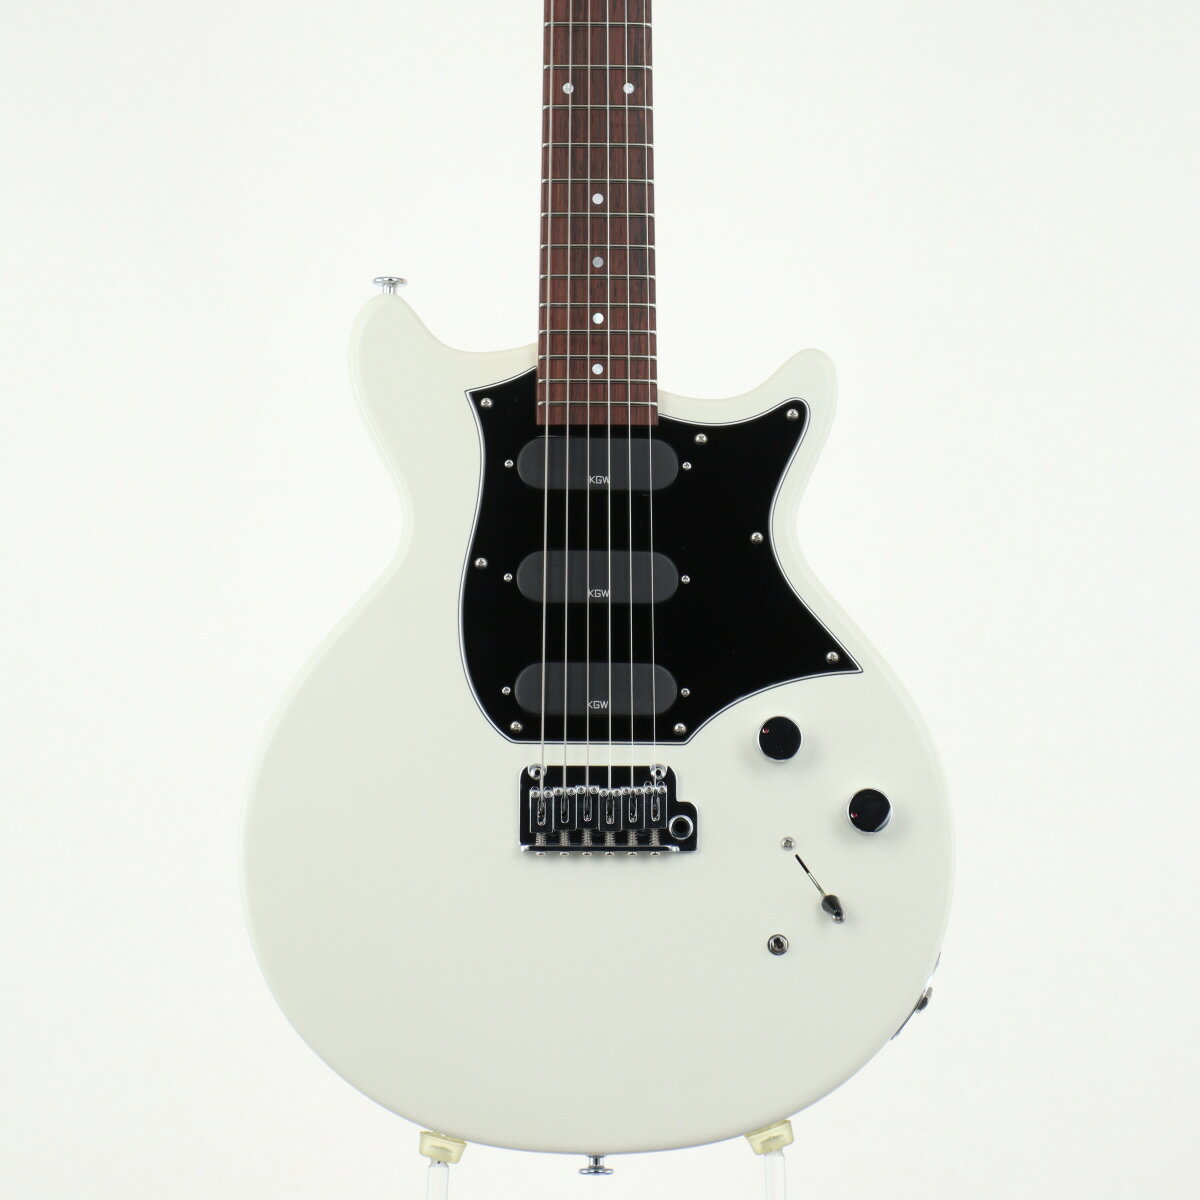 【中古】Kz Guitar Works / Kz One Solid Proto Type #12 Matte White【心斎橋店】